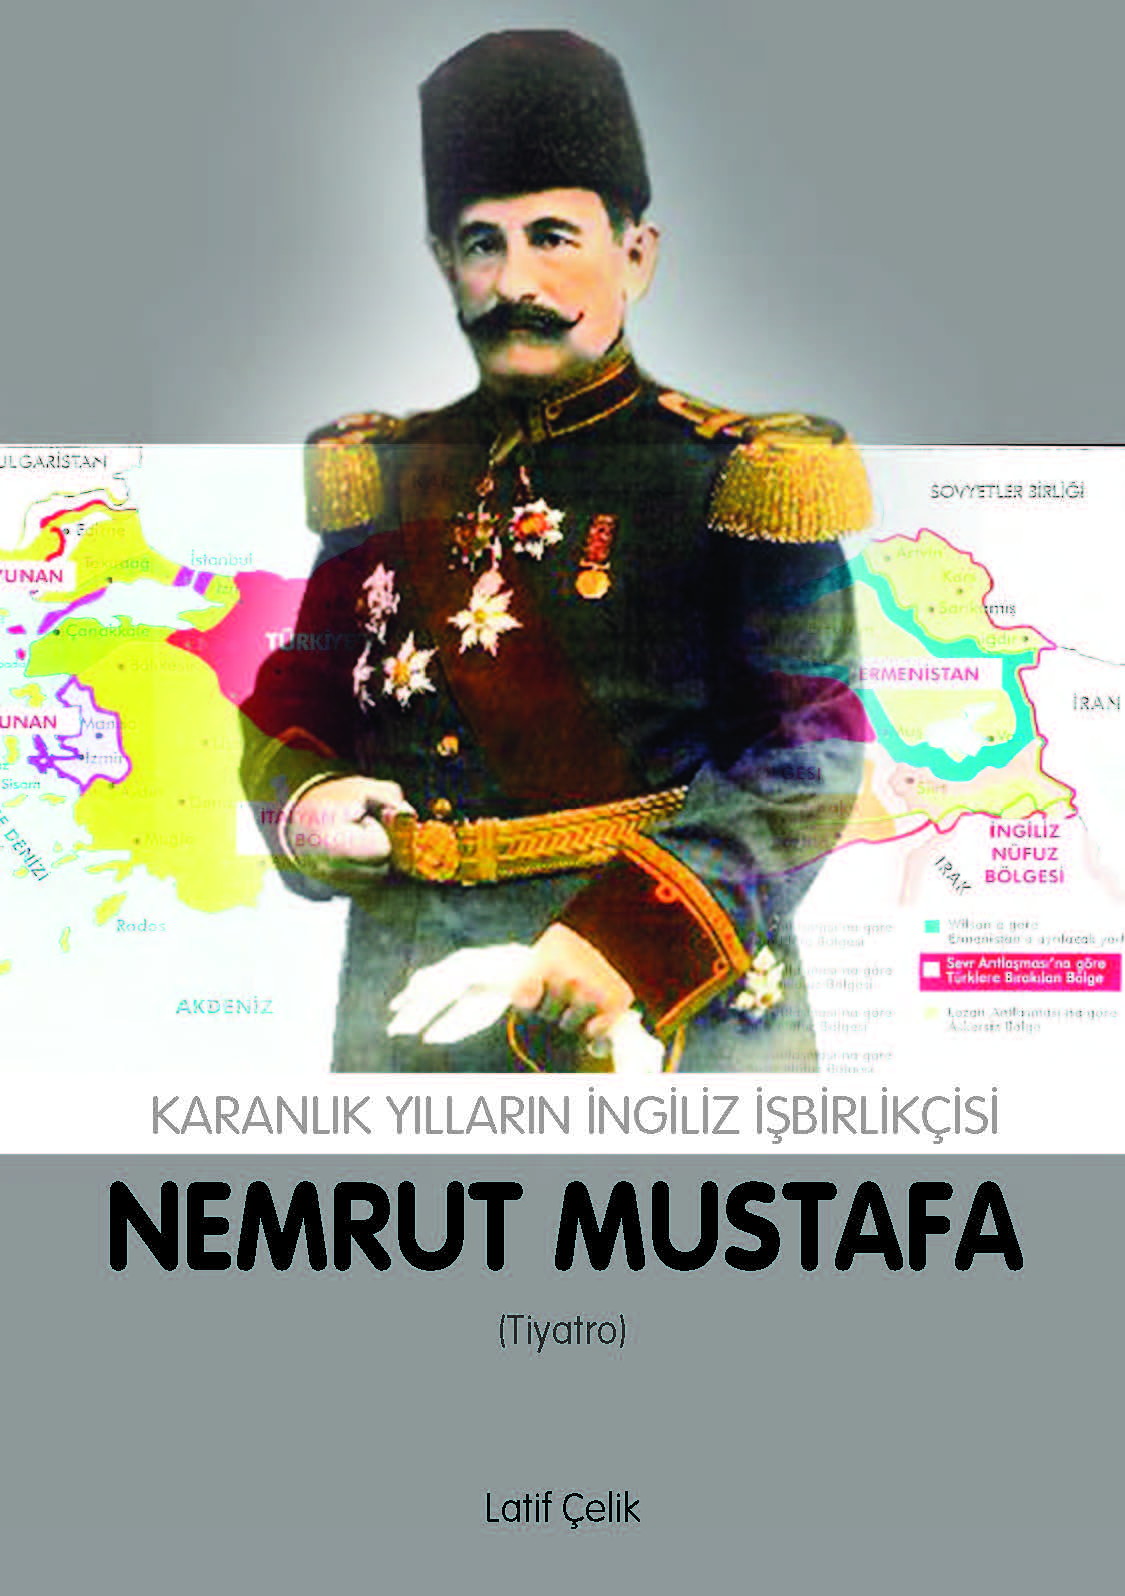 Nemrut Mustafa - Karanlık Yılların İngiliz İşbirlikçisi - Dr. Latif Çelik